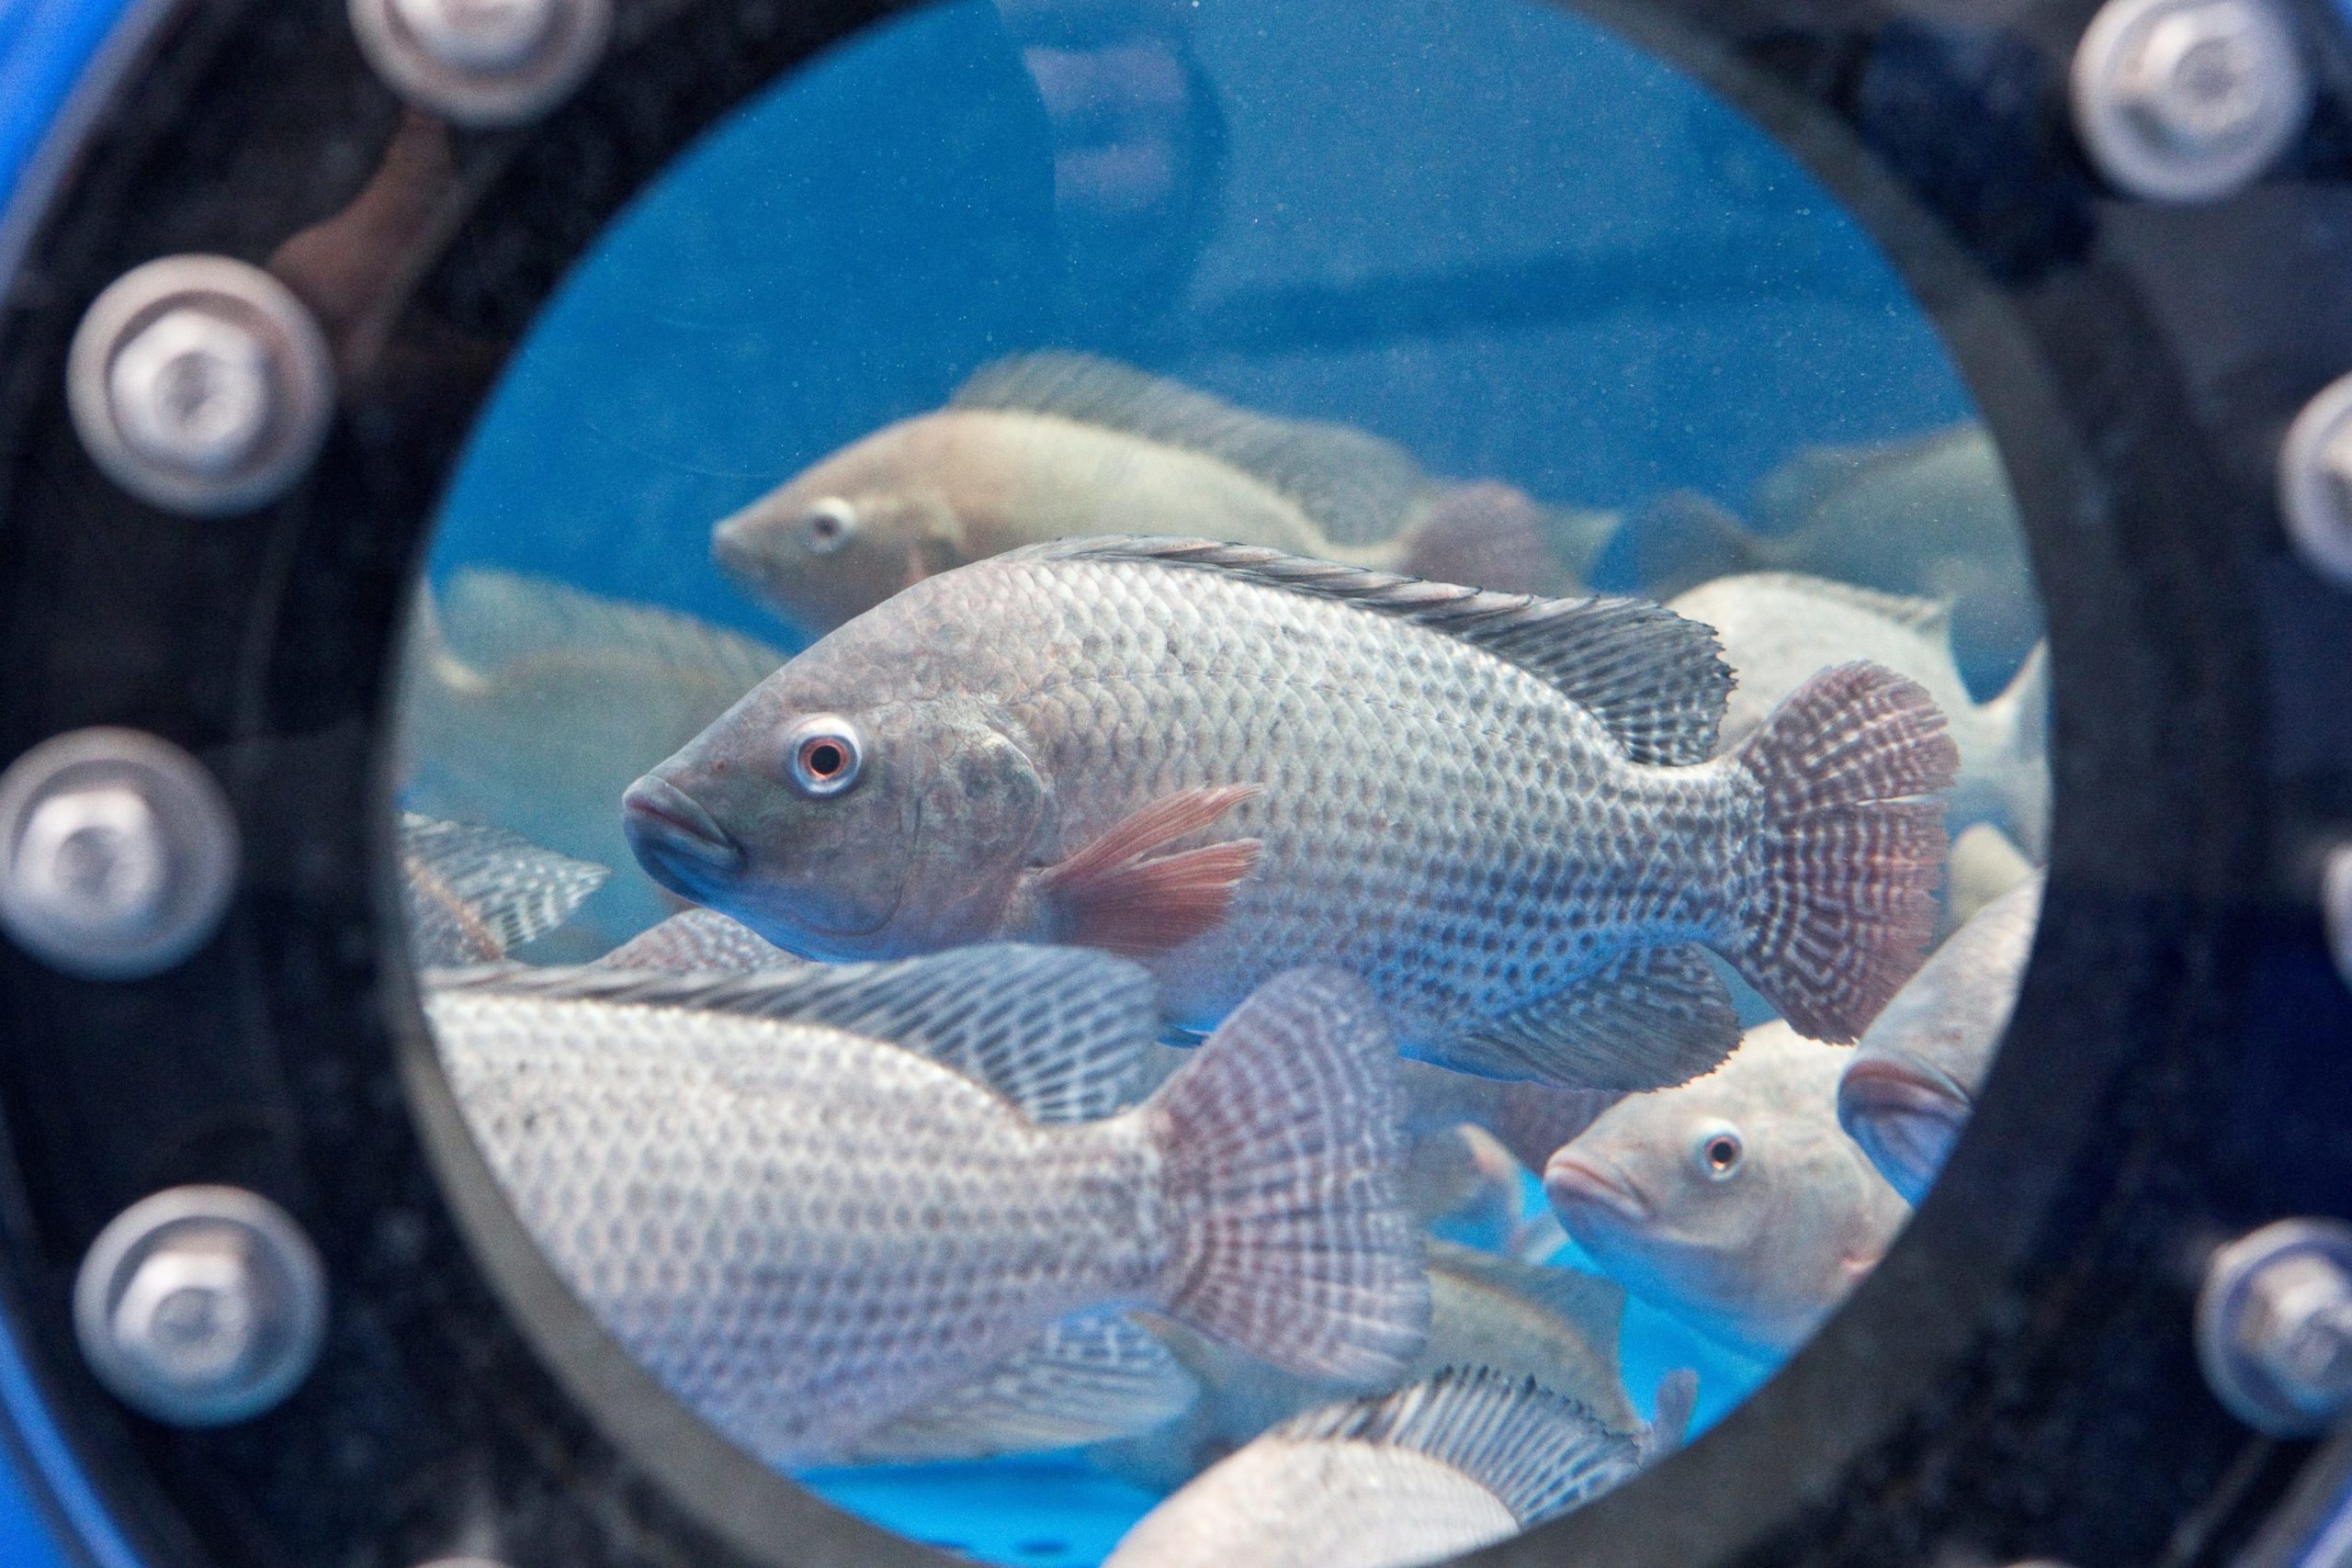 Tilapia (Oreochromis niloticus) in einer Forschungskreislaufanlage des IGB. Die Art ist weltweit der drittmeist produzierte Fisch aus Aquakultur. Die tropische Art wächst schnell und kann pflanzlich ernährt werden. In Deutschland ist Tilapia im Handel zwar erhältlich, vielen Verbraucherinnen und Verbraucher aber noch unbekannt. Foto: Ralf Günther